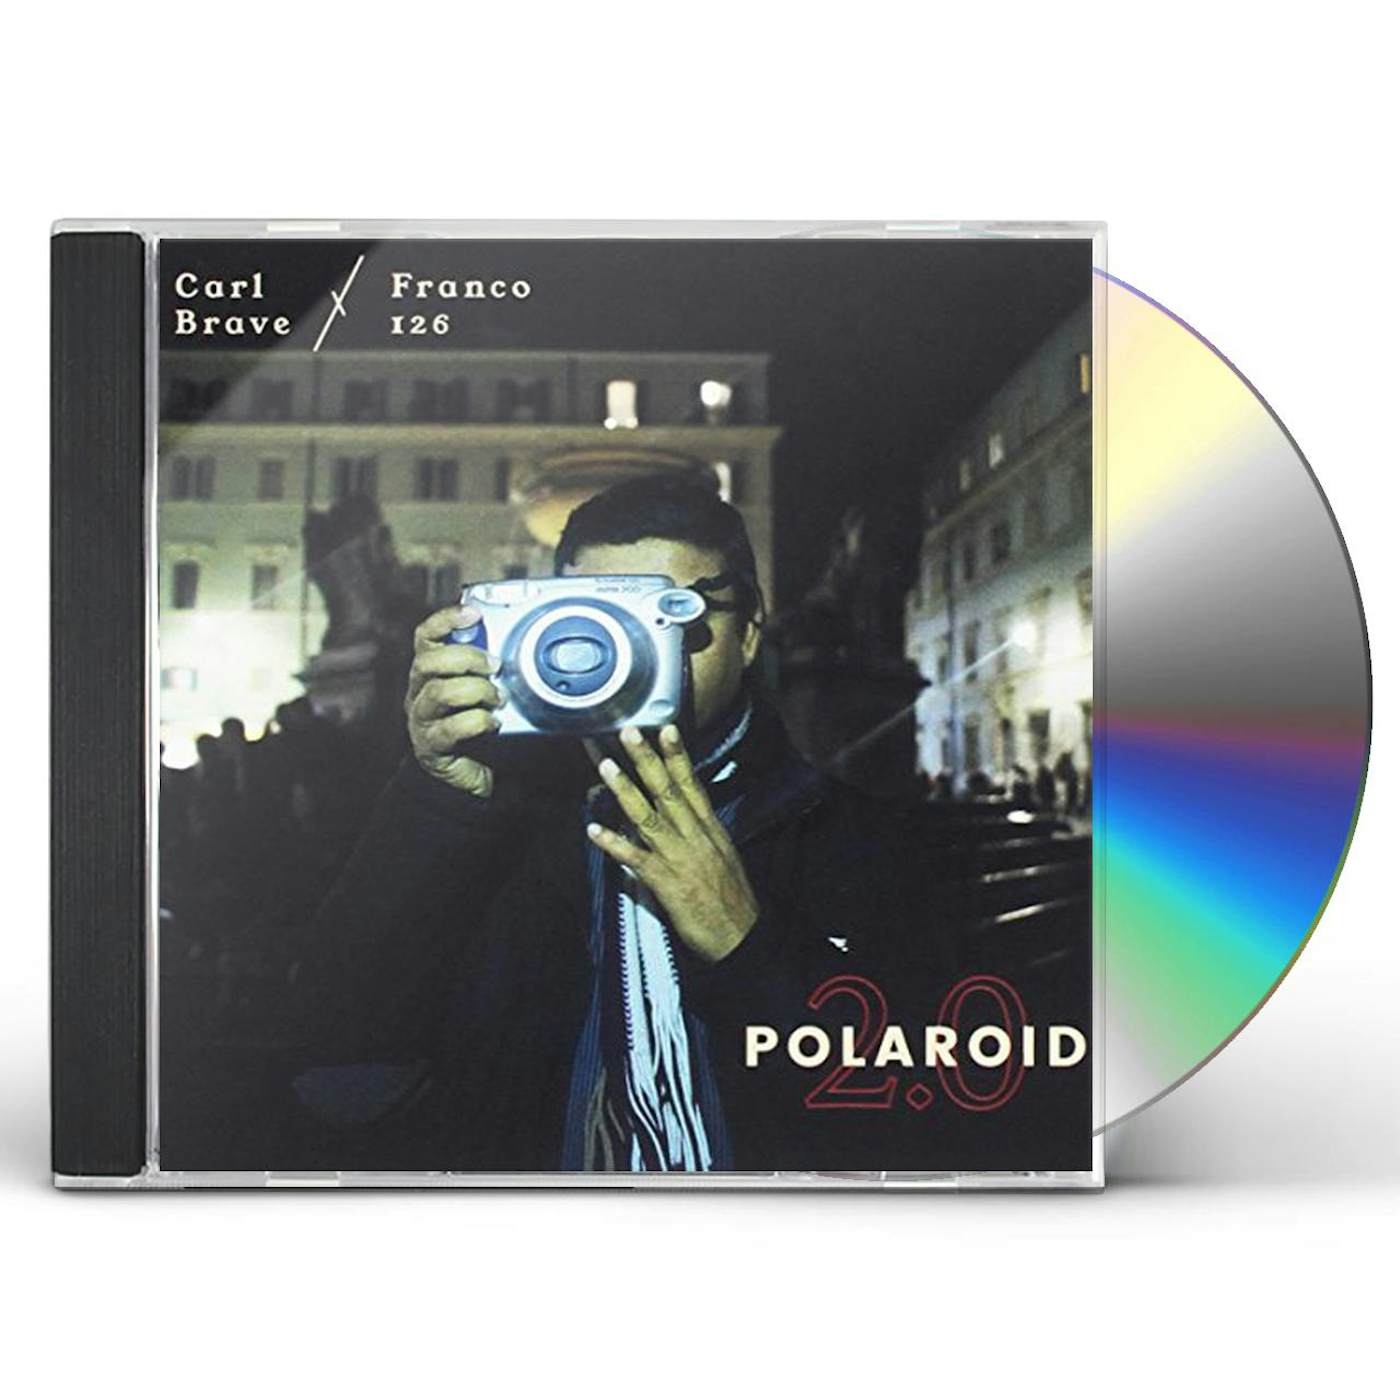 Carl Brave x Franco126 POLAROID 2.0 CD